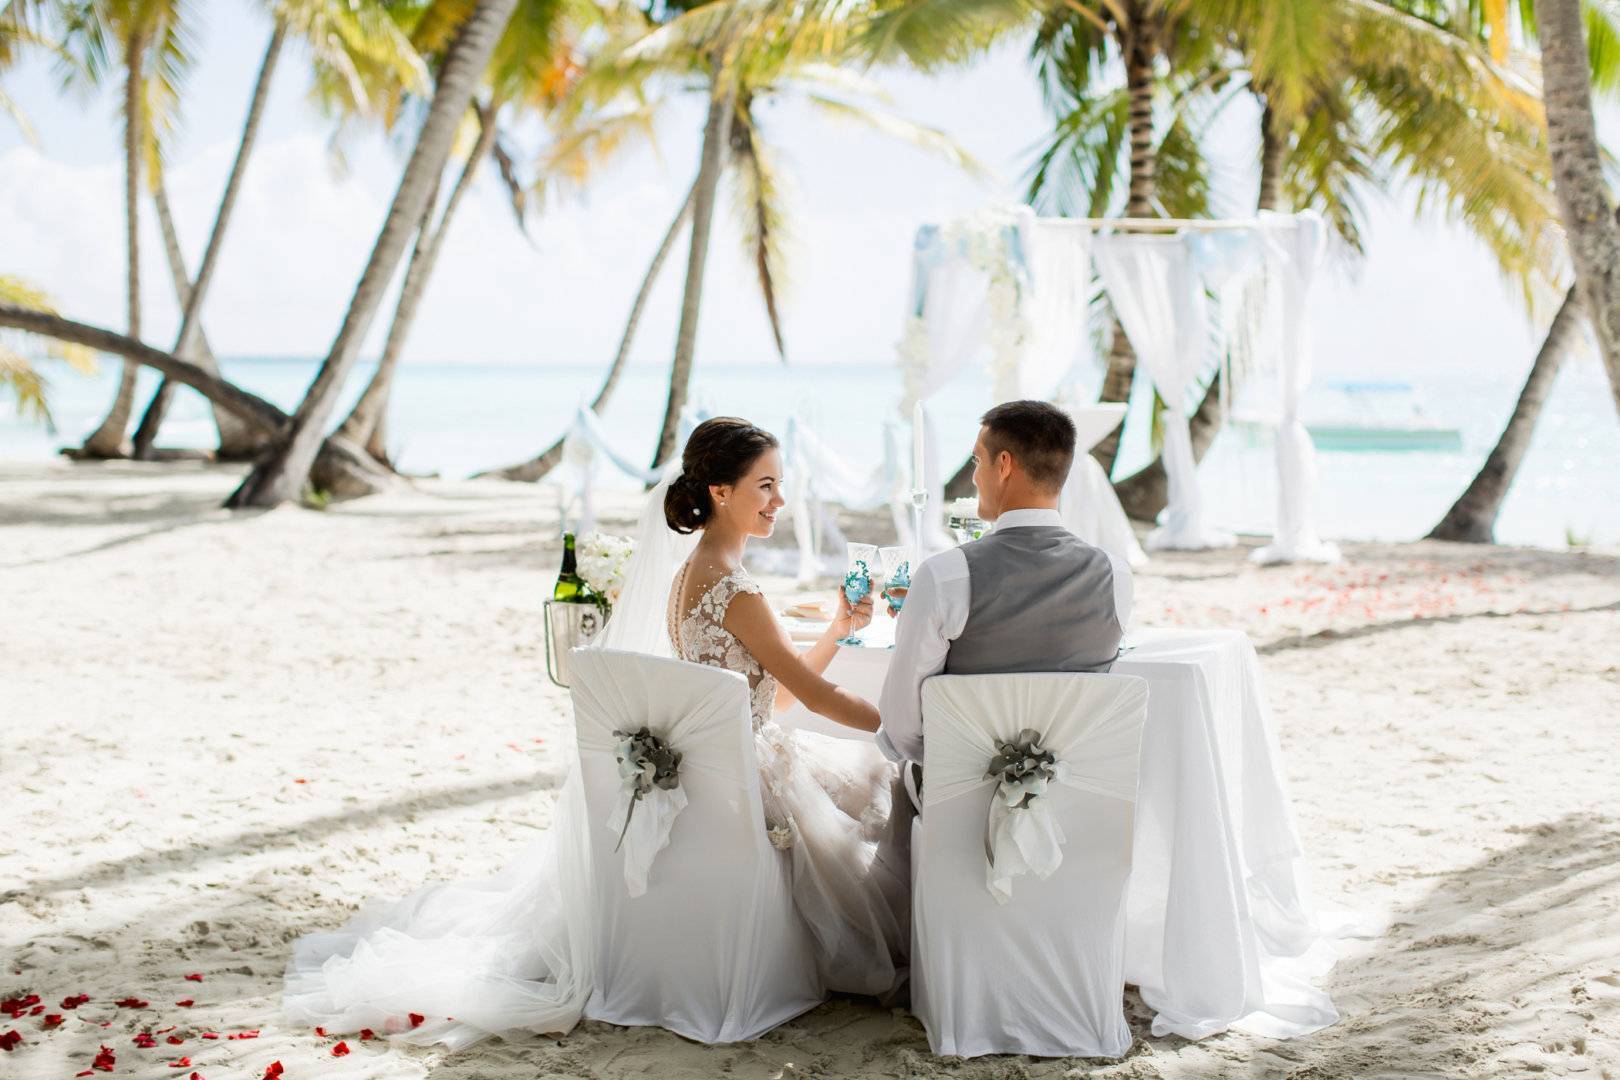 Организация свадьбы на островах: идеи и советы